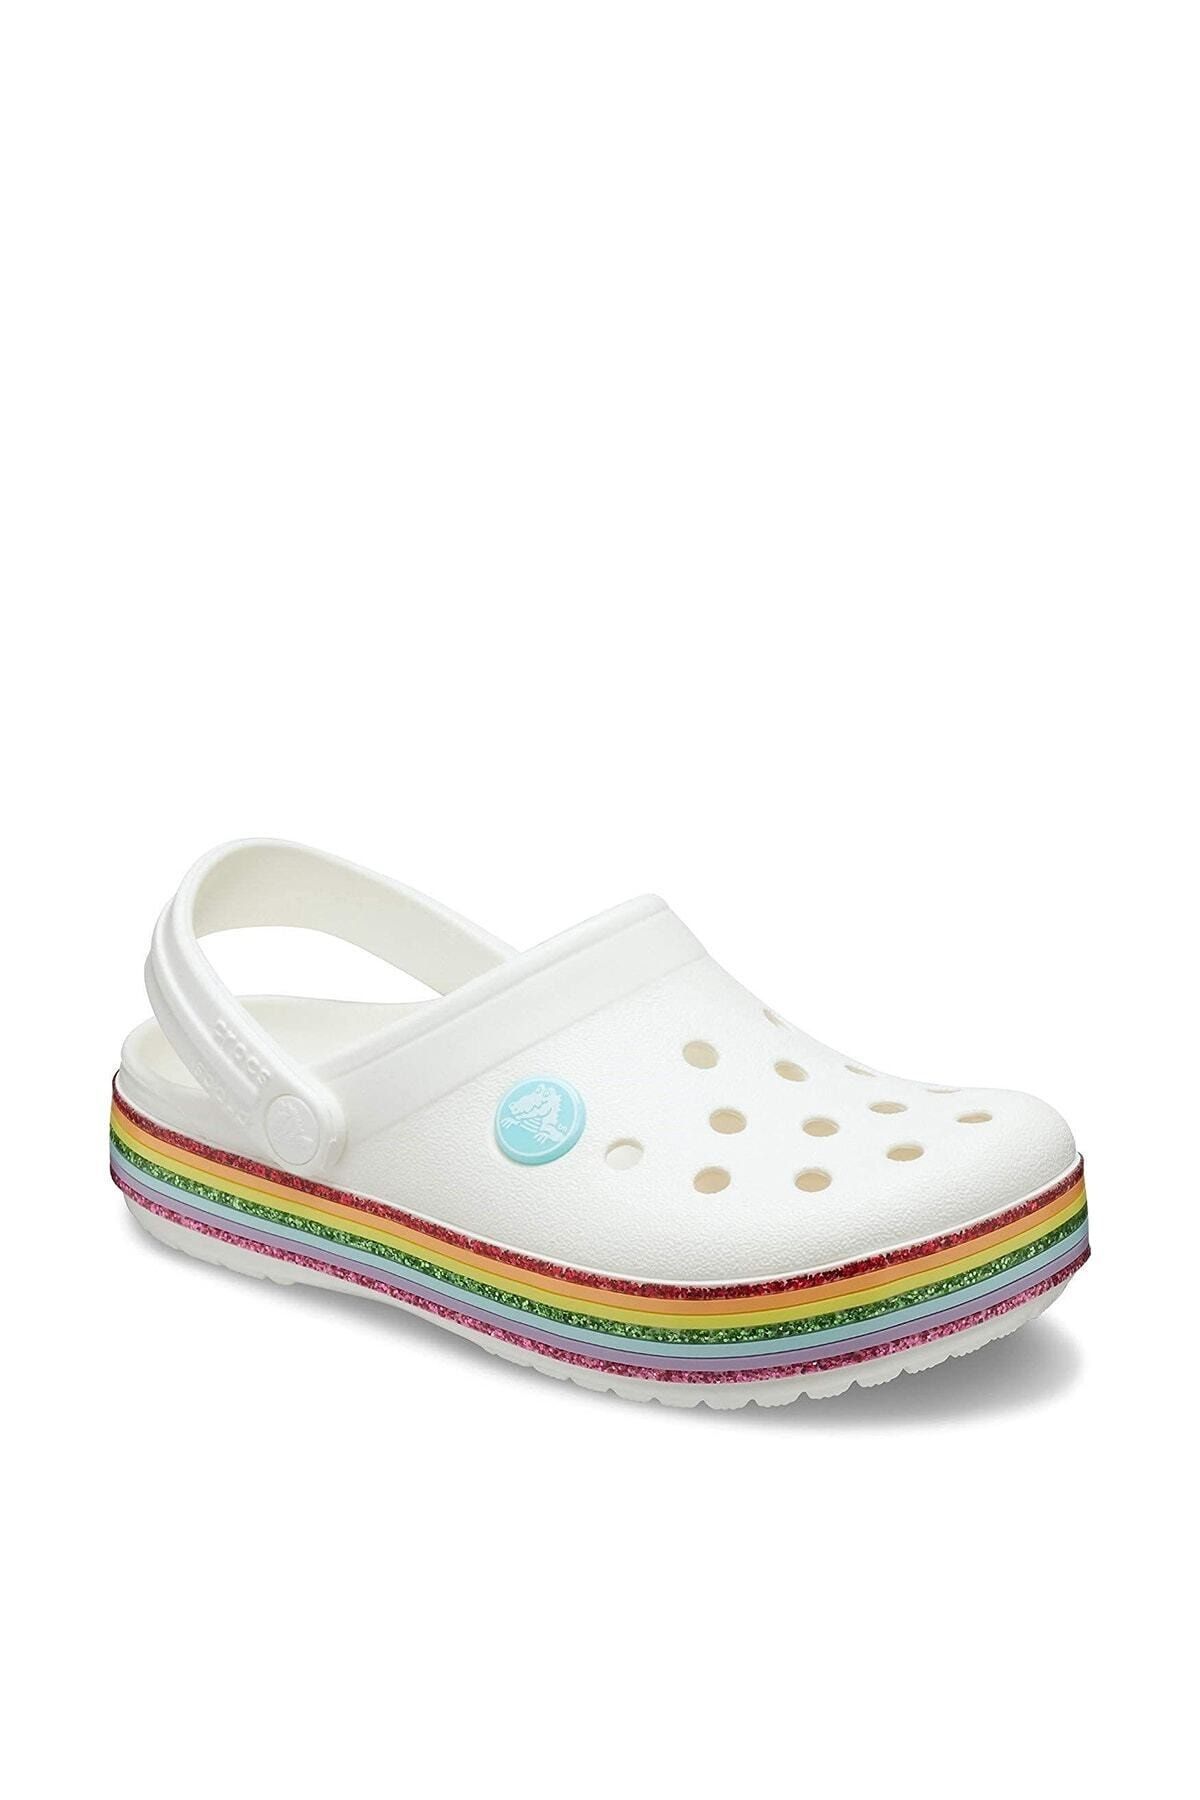 Crocs Beyaz Kız Çocuk Spor Sandalet